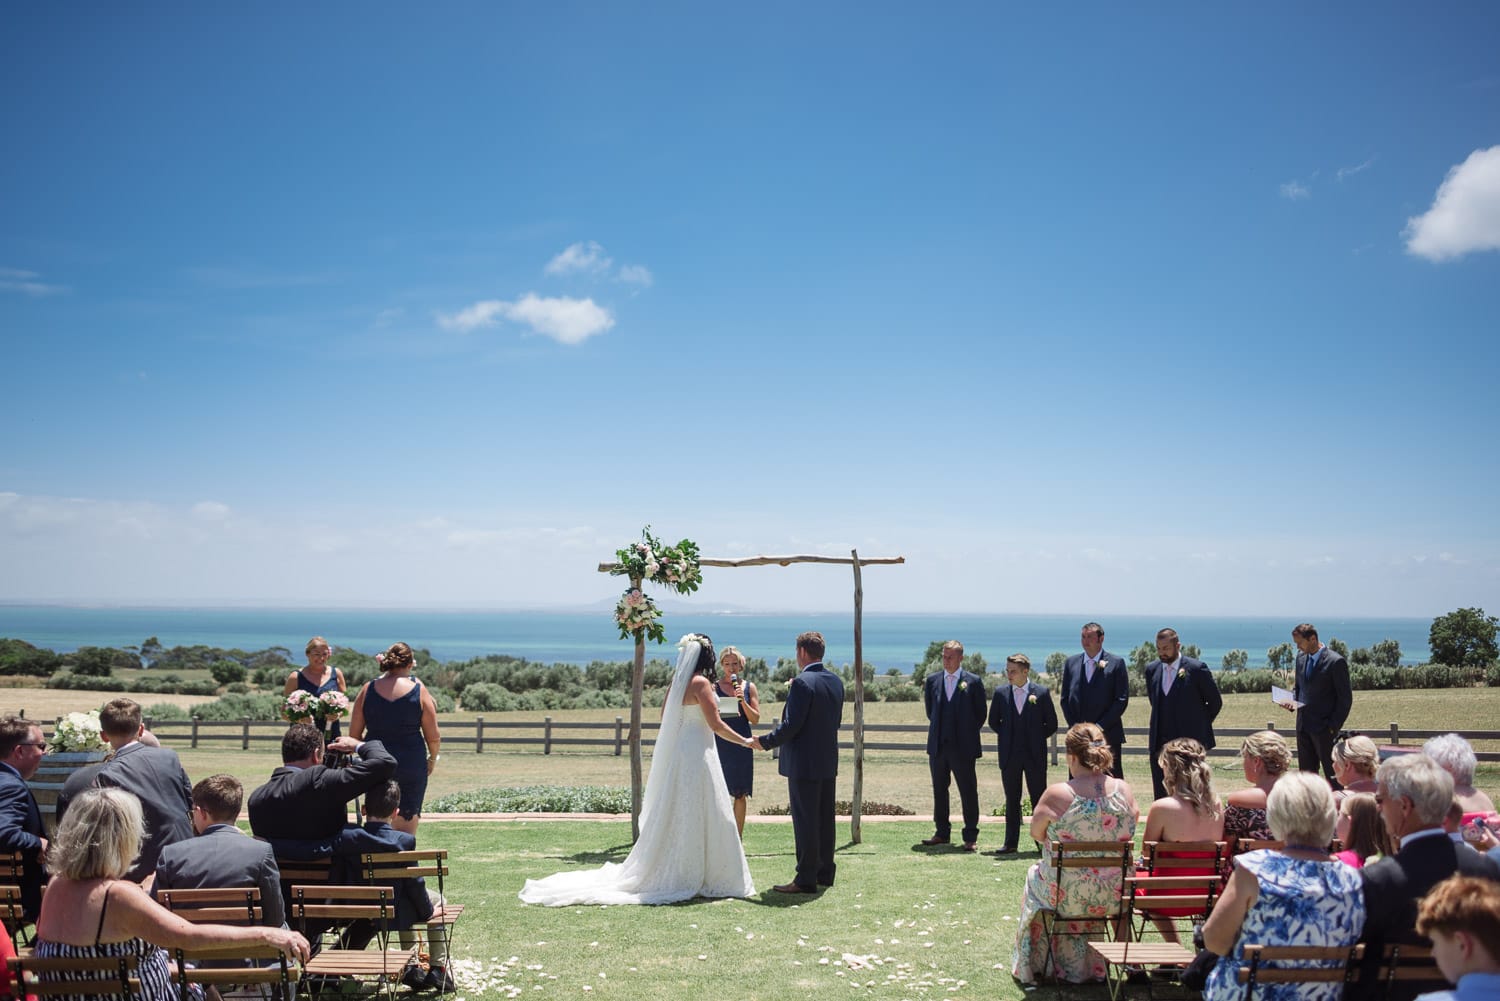 Rusty Gate Geelong Wedding Venue on the Great Ocean Road